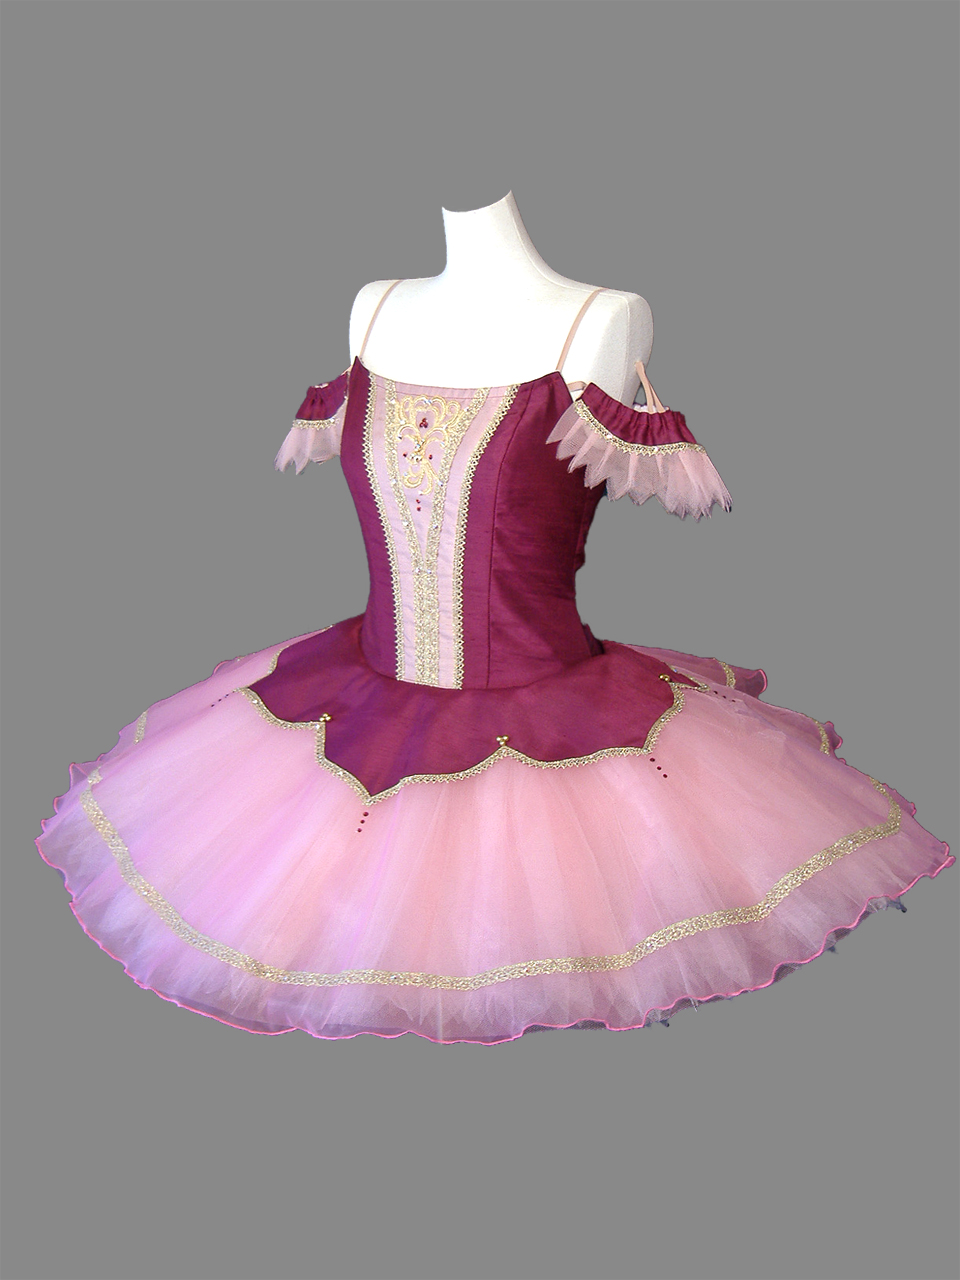 179 バレエ 衣装 クラシックチュチュ ピンク ホワイト 安いオンライン